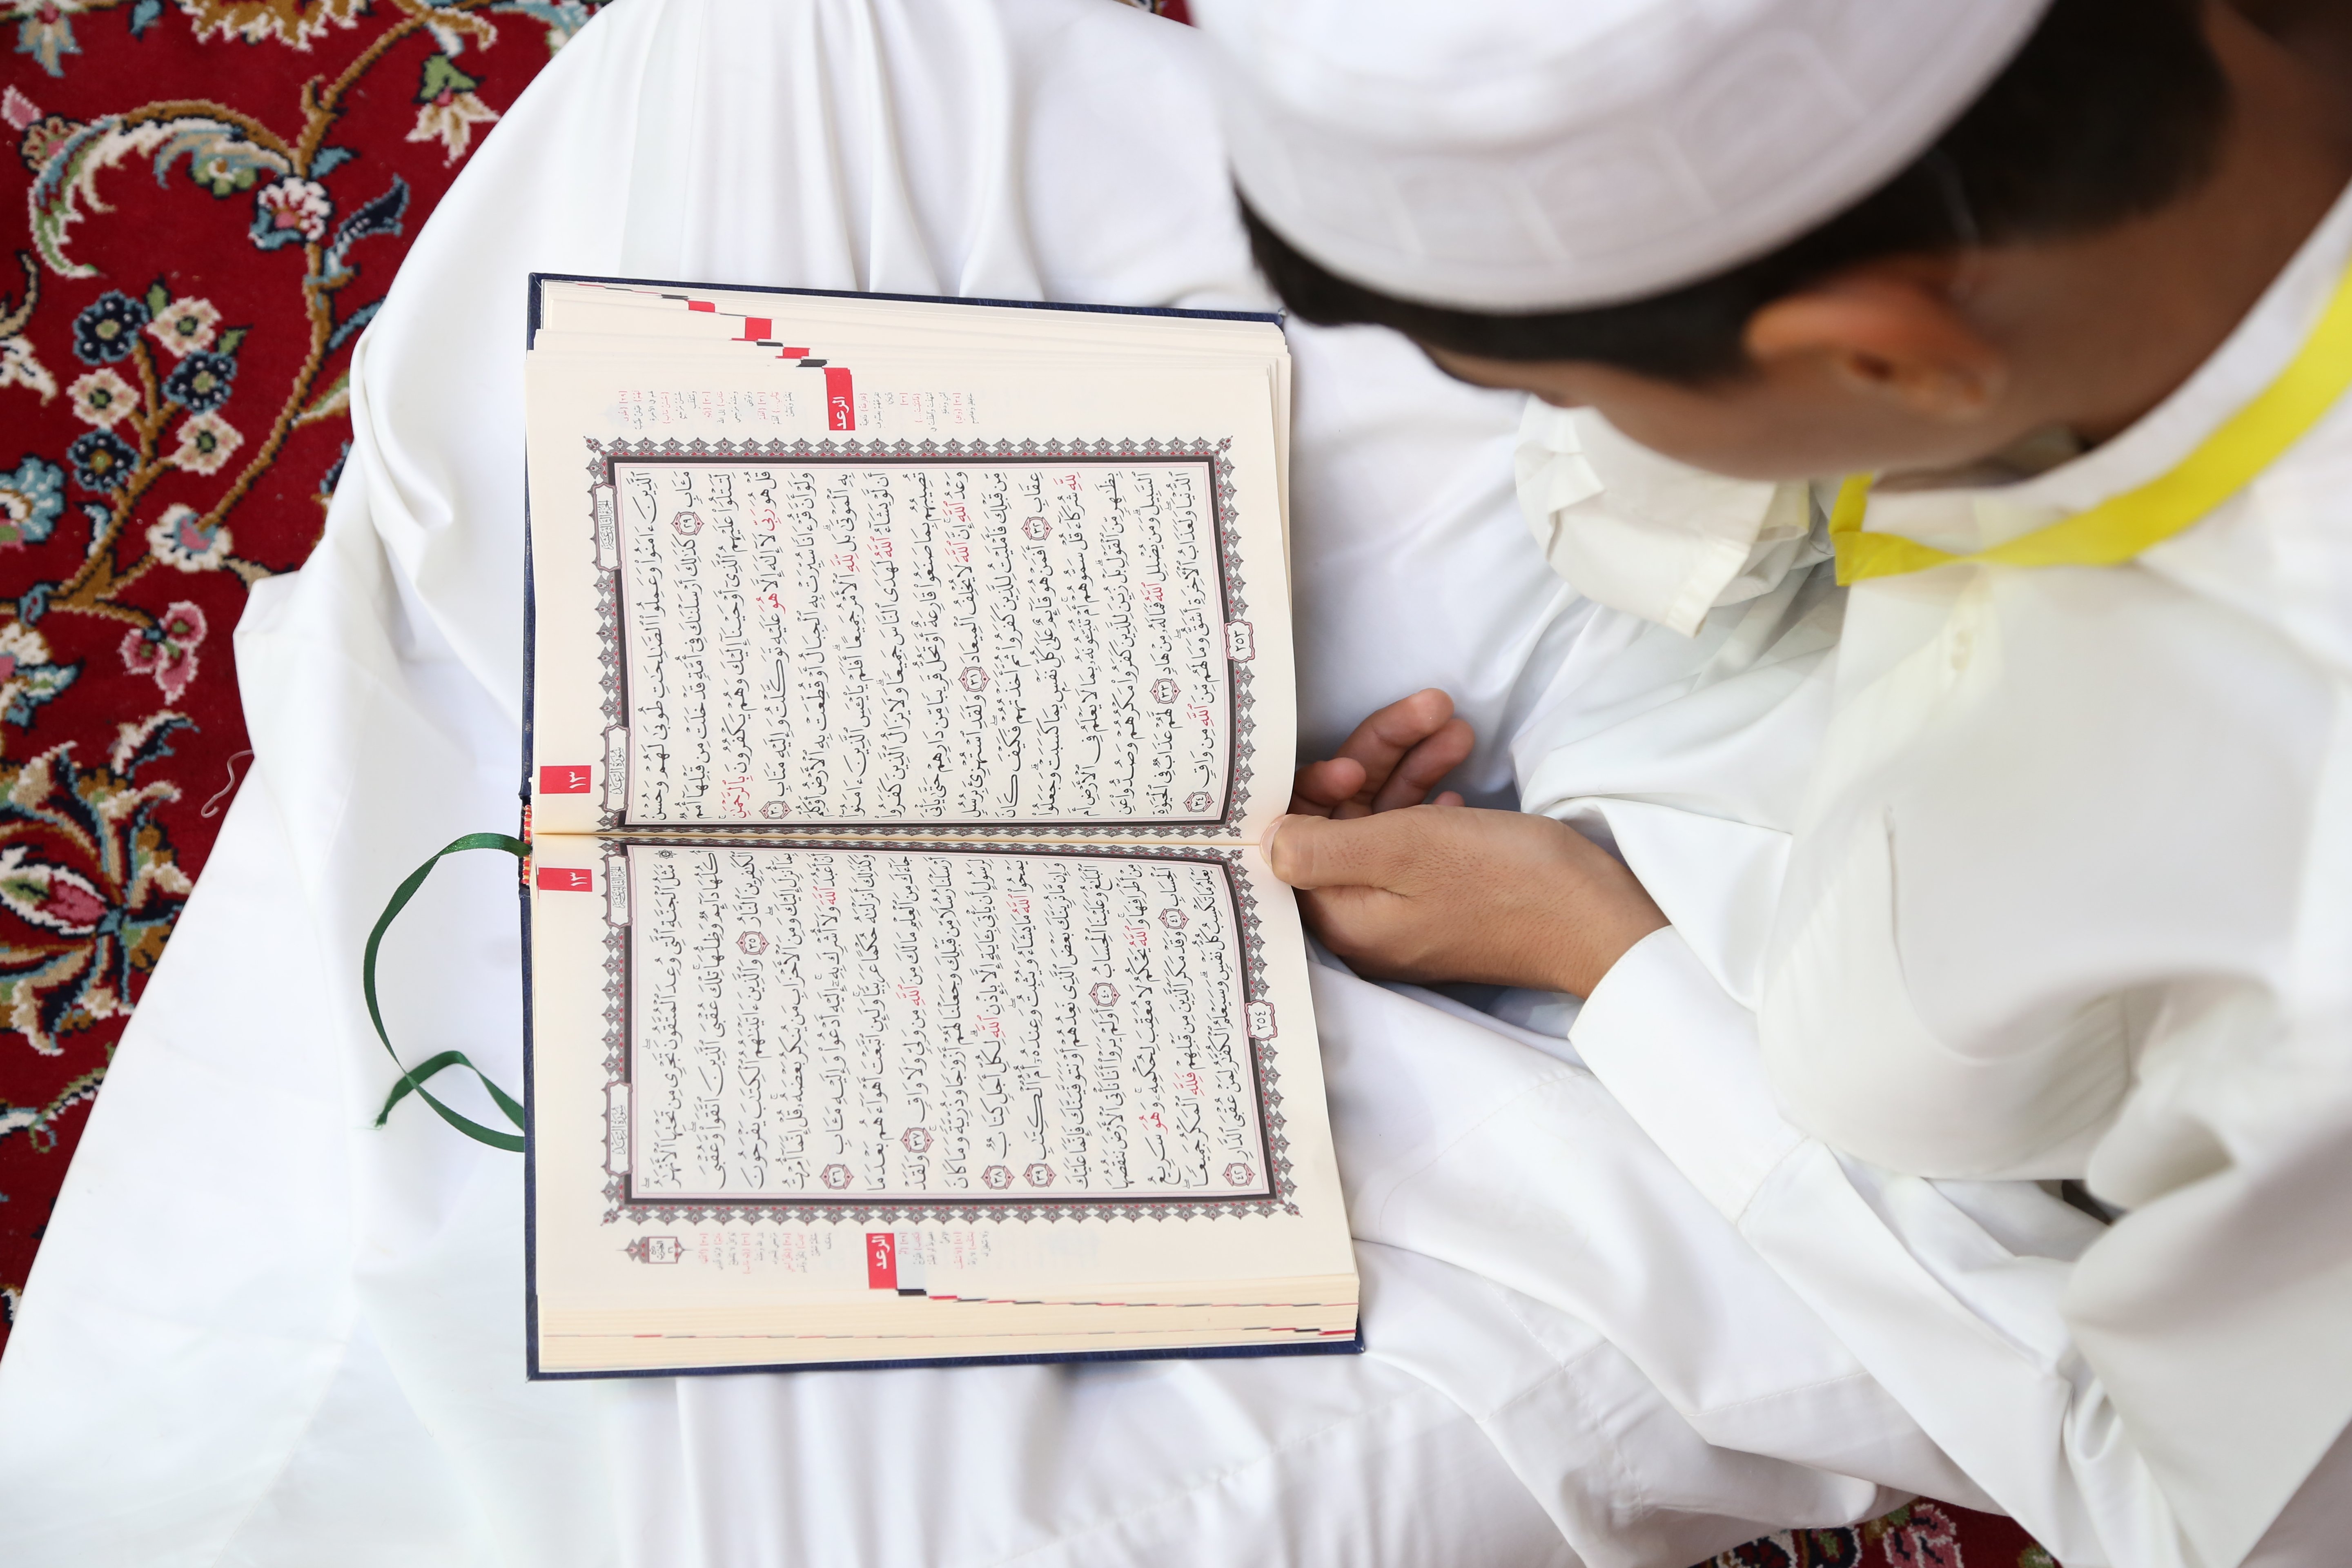 المؤمنون يتزاحمون على مائدة الكتاب العزيز من خلال الختمة القرآنية الرمضانية في الصحن العباسي الشريف.